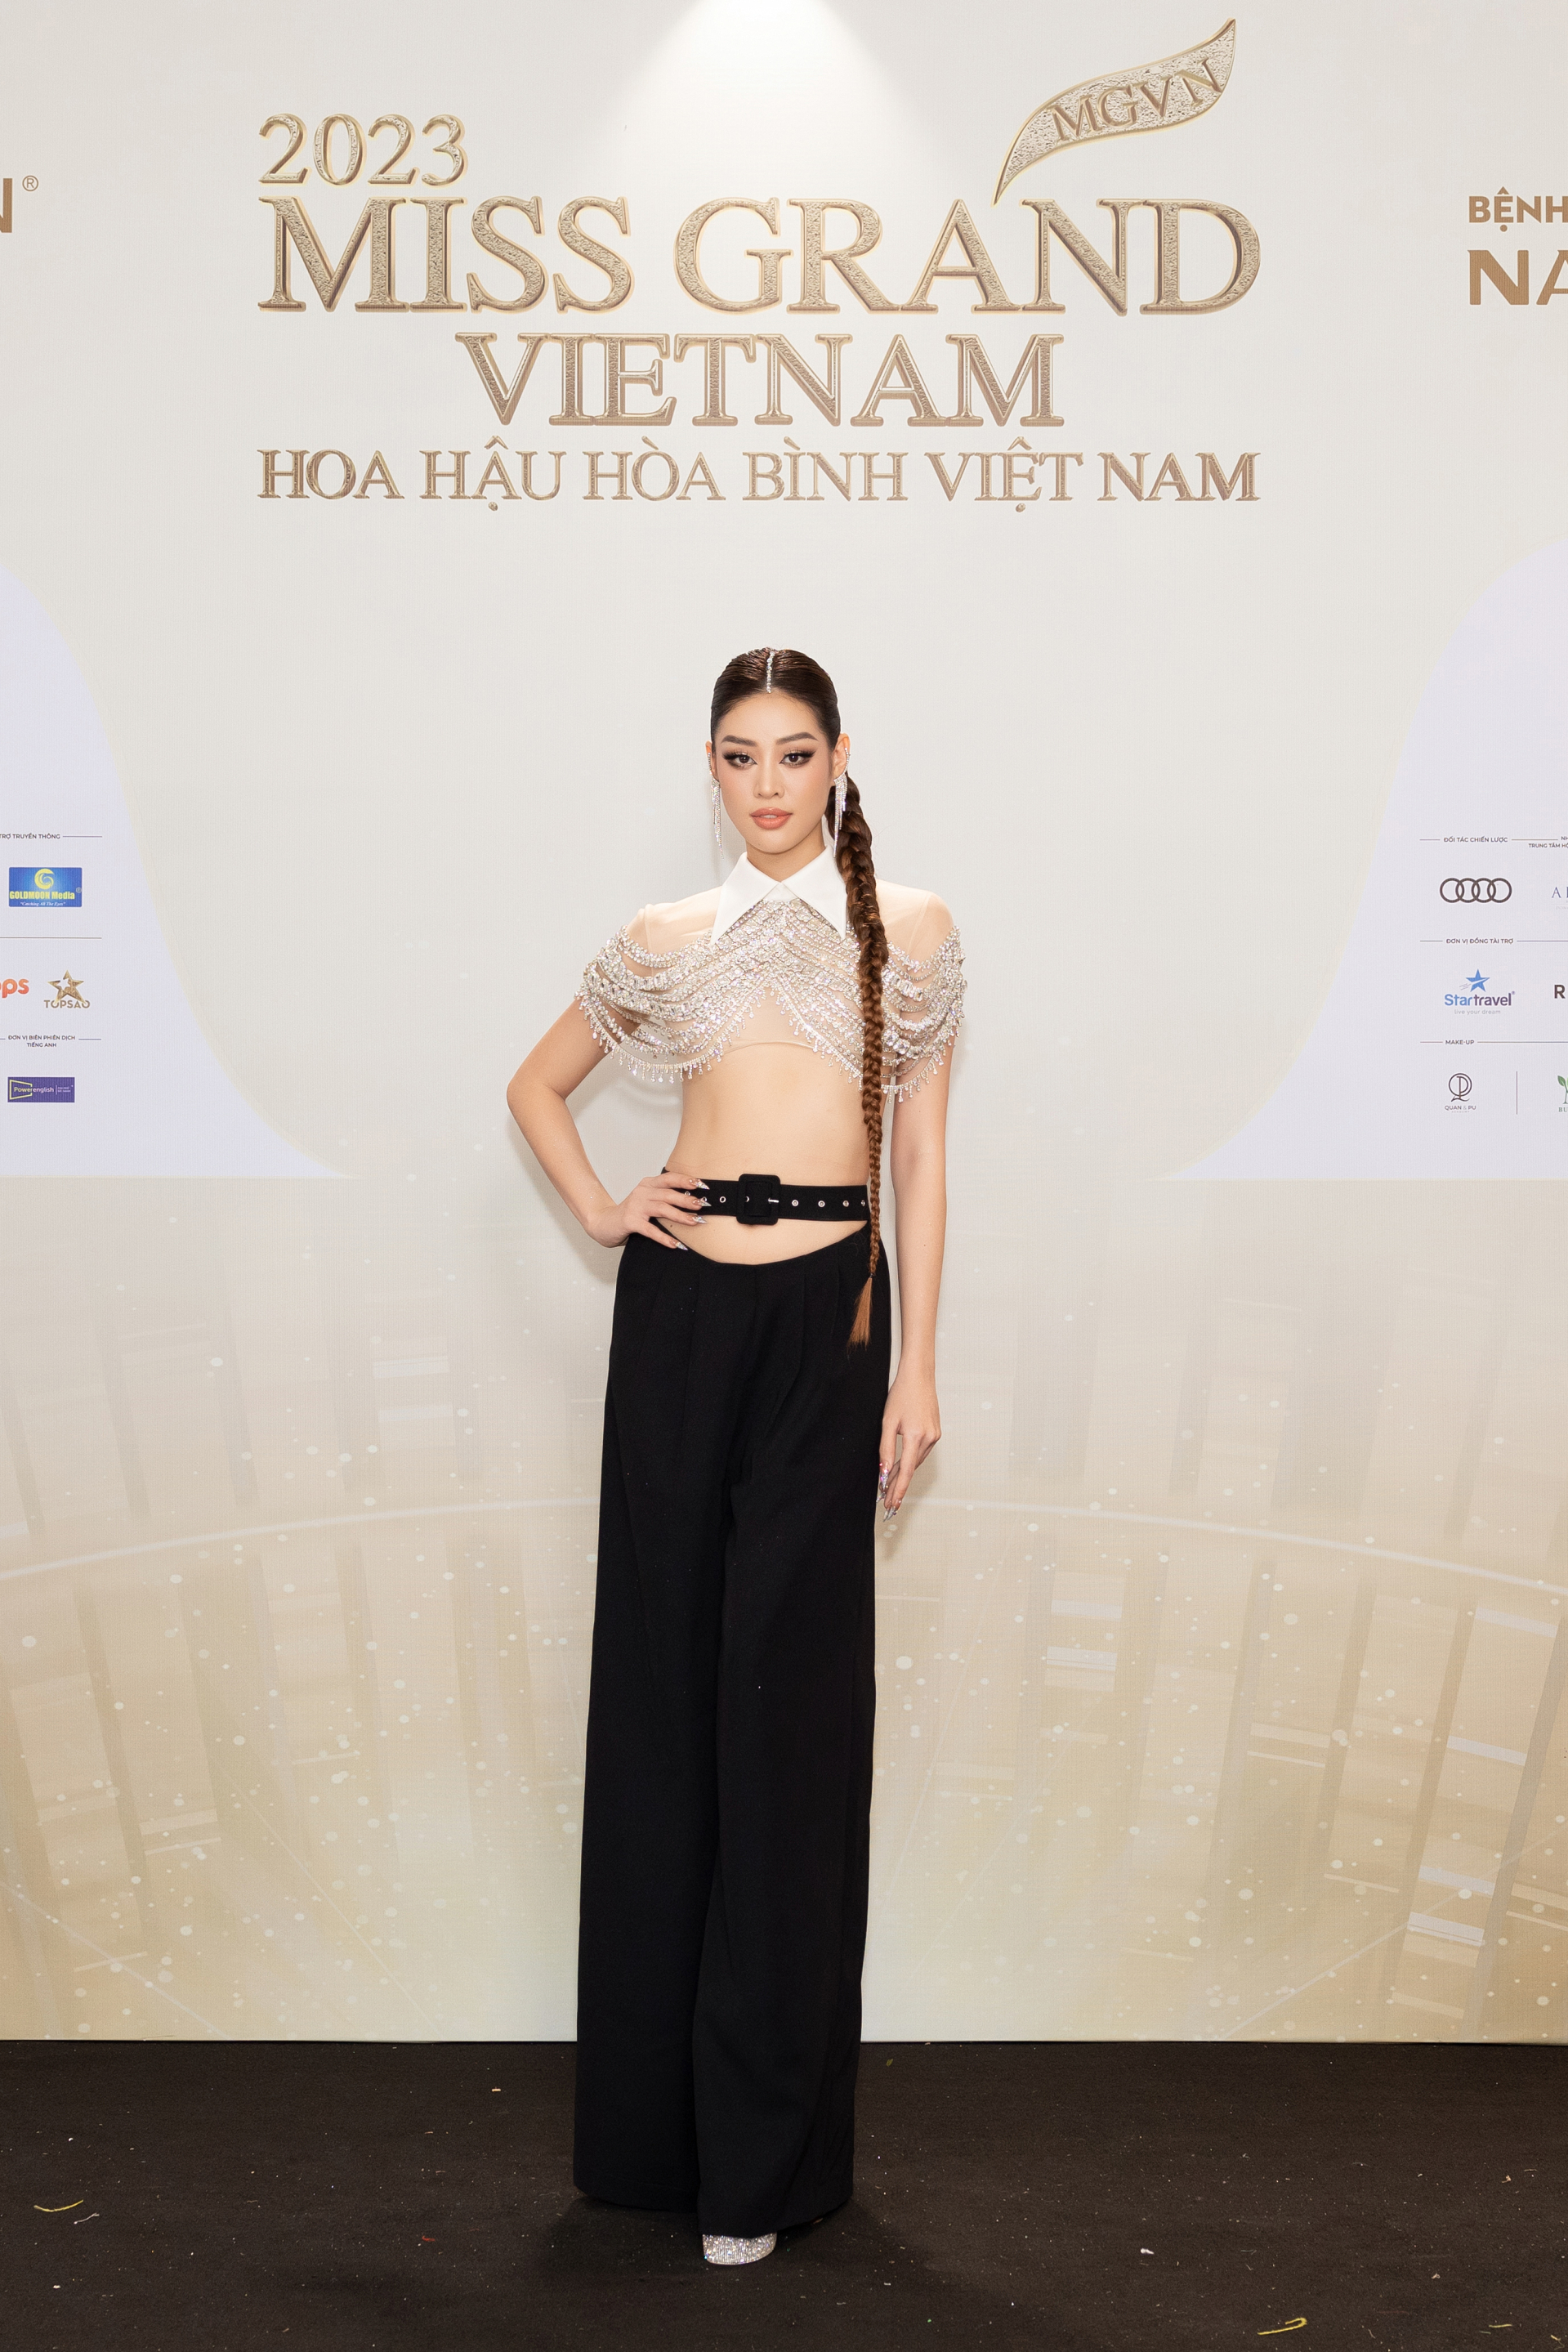 Thảm đỏ chung kết Miss Grand Vietnam 2023: Vợ chồng Trường Giang Nhã Phương đi cùng bạn trai tin đồn của Đoàn Thiên Ân - ảnh 11